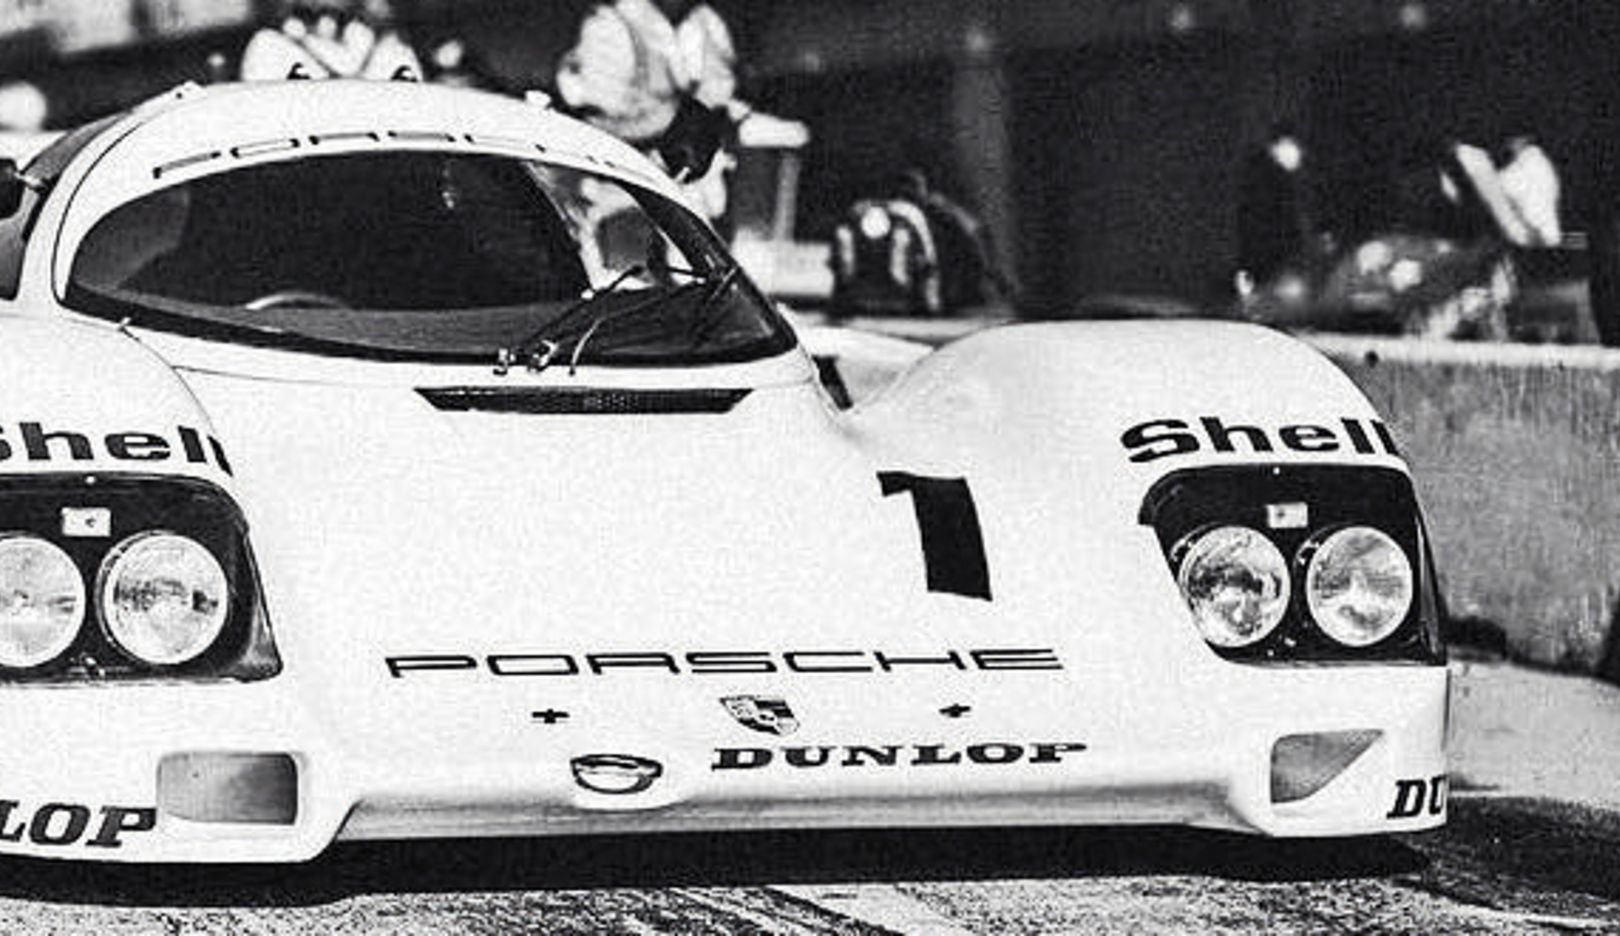 Reduziert: In Schwarz-Weiß offenbart sich das puristische Design dieses Porsche 962 perfekt.